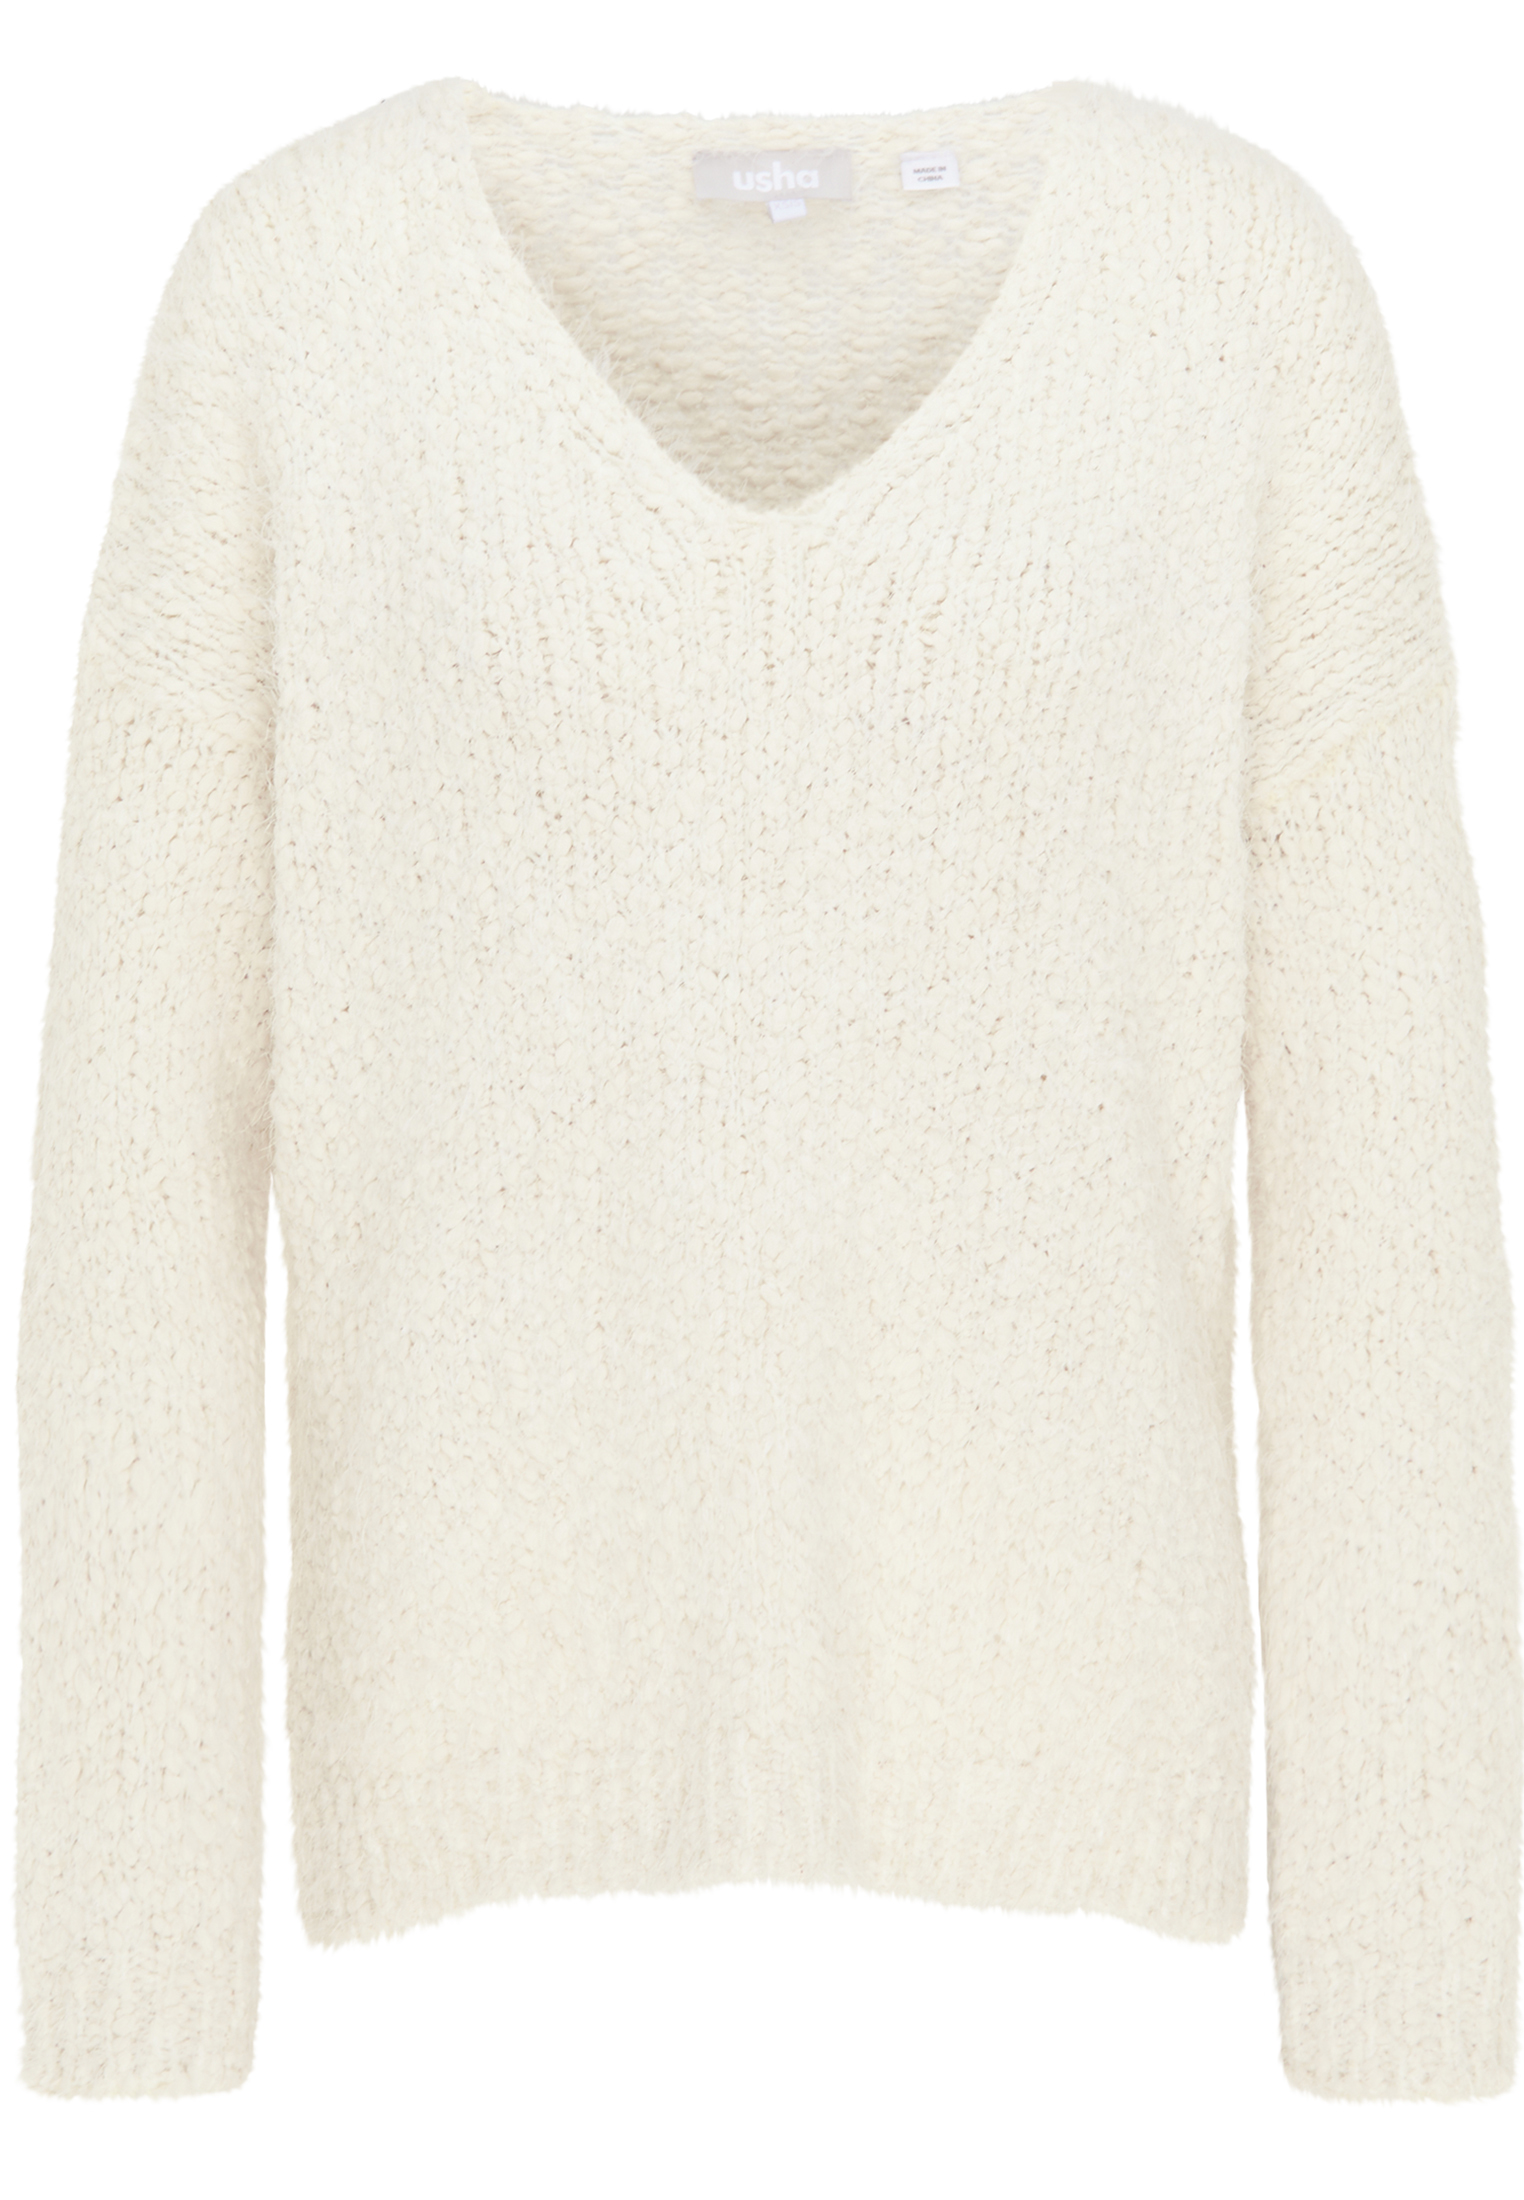 Odzież Plus size Usha Sweter w kolorze Białym 